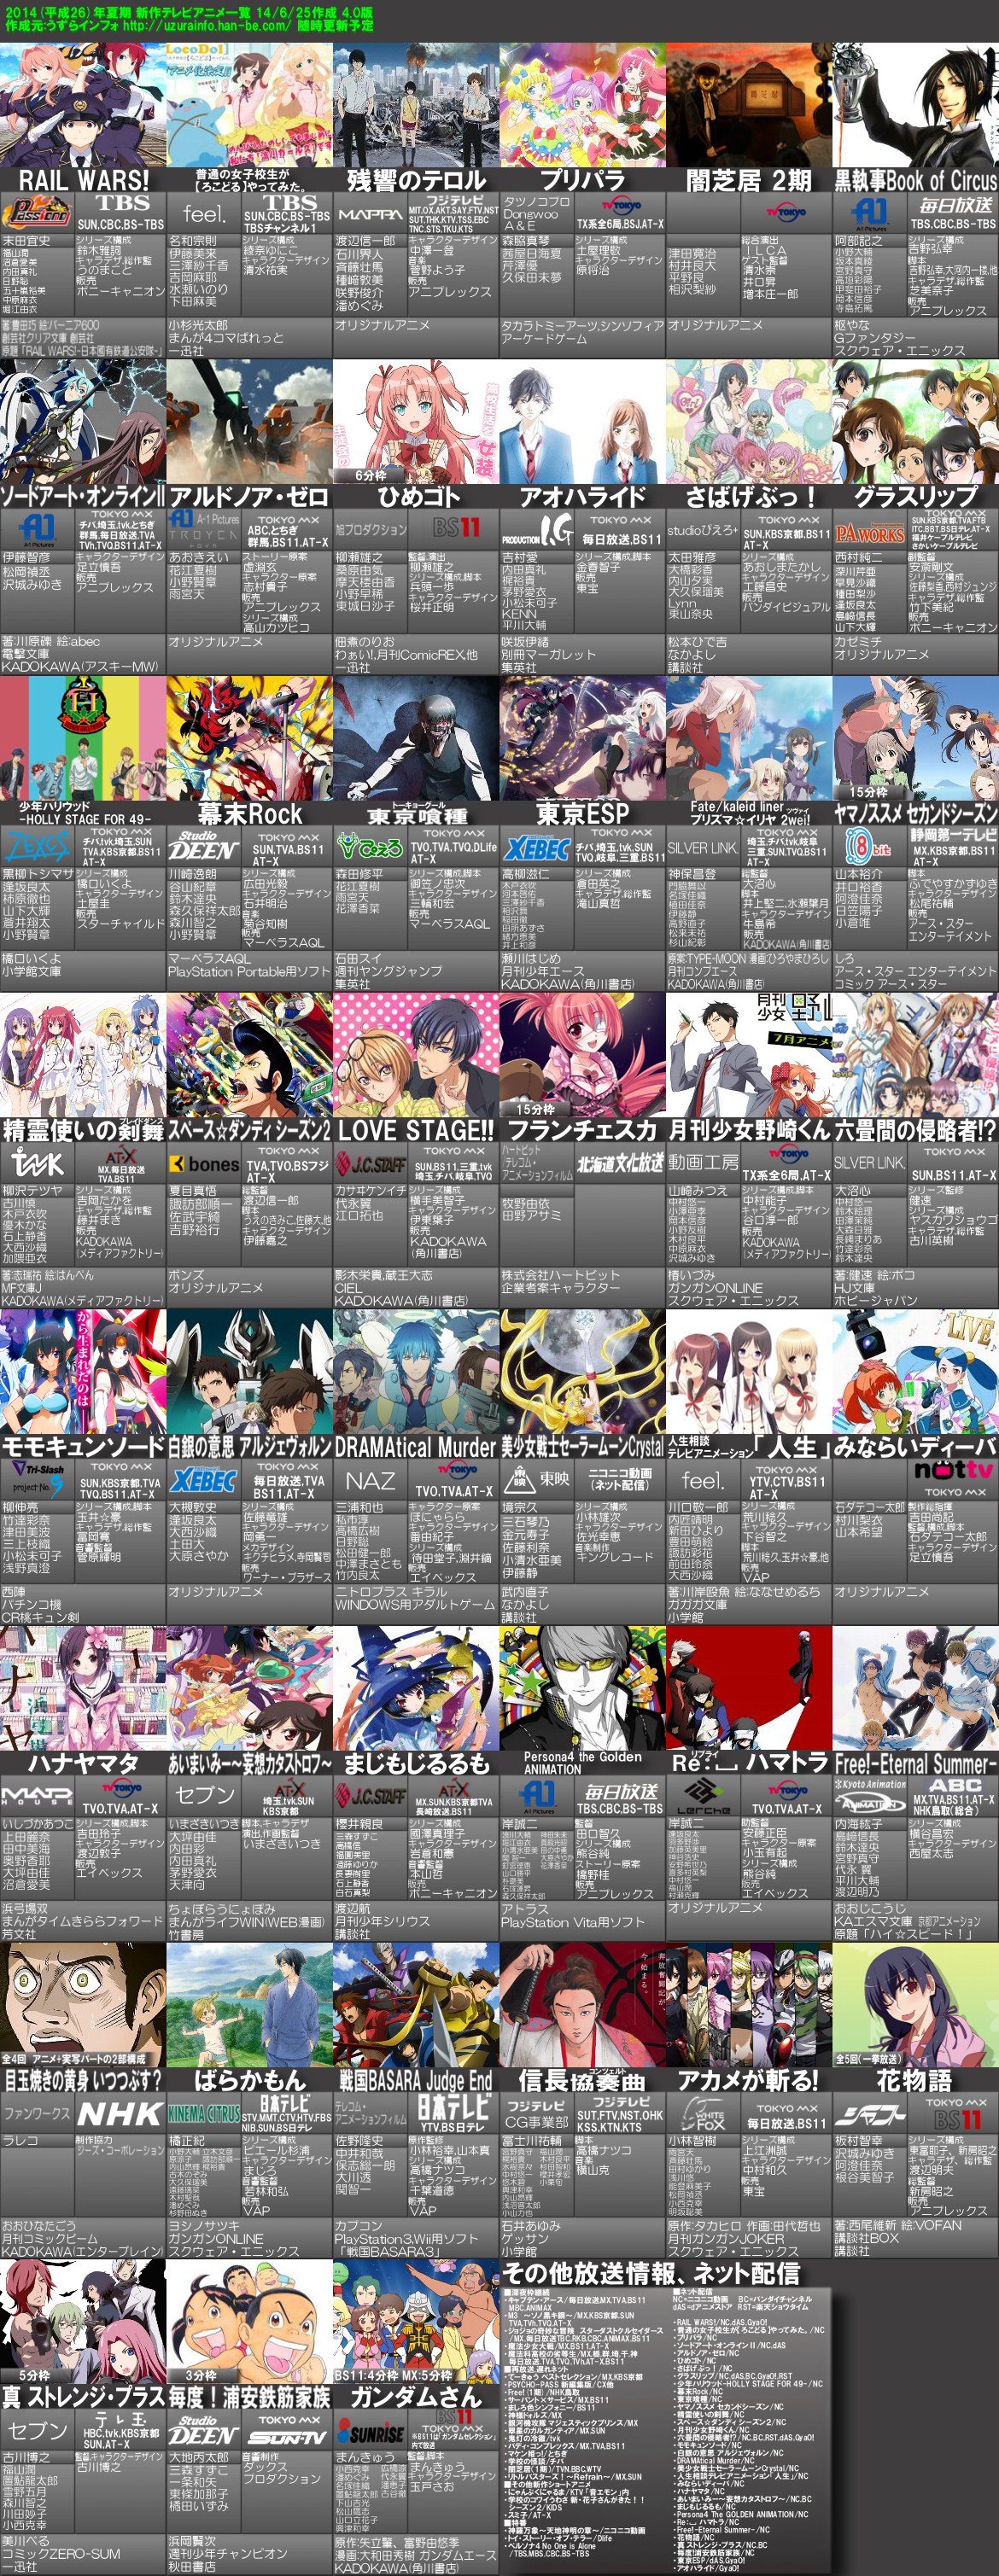 2014 年 7 月 アニメ Uudavidae8 S Blog